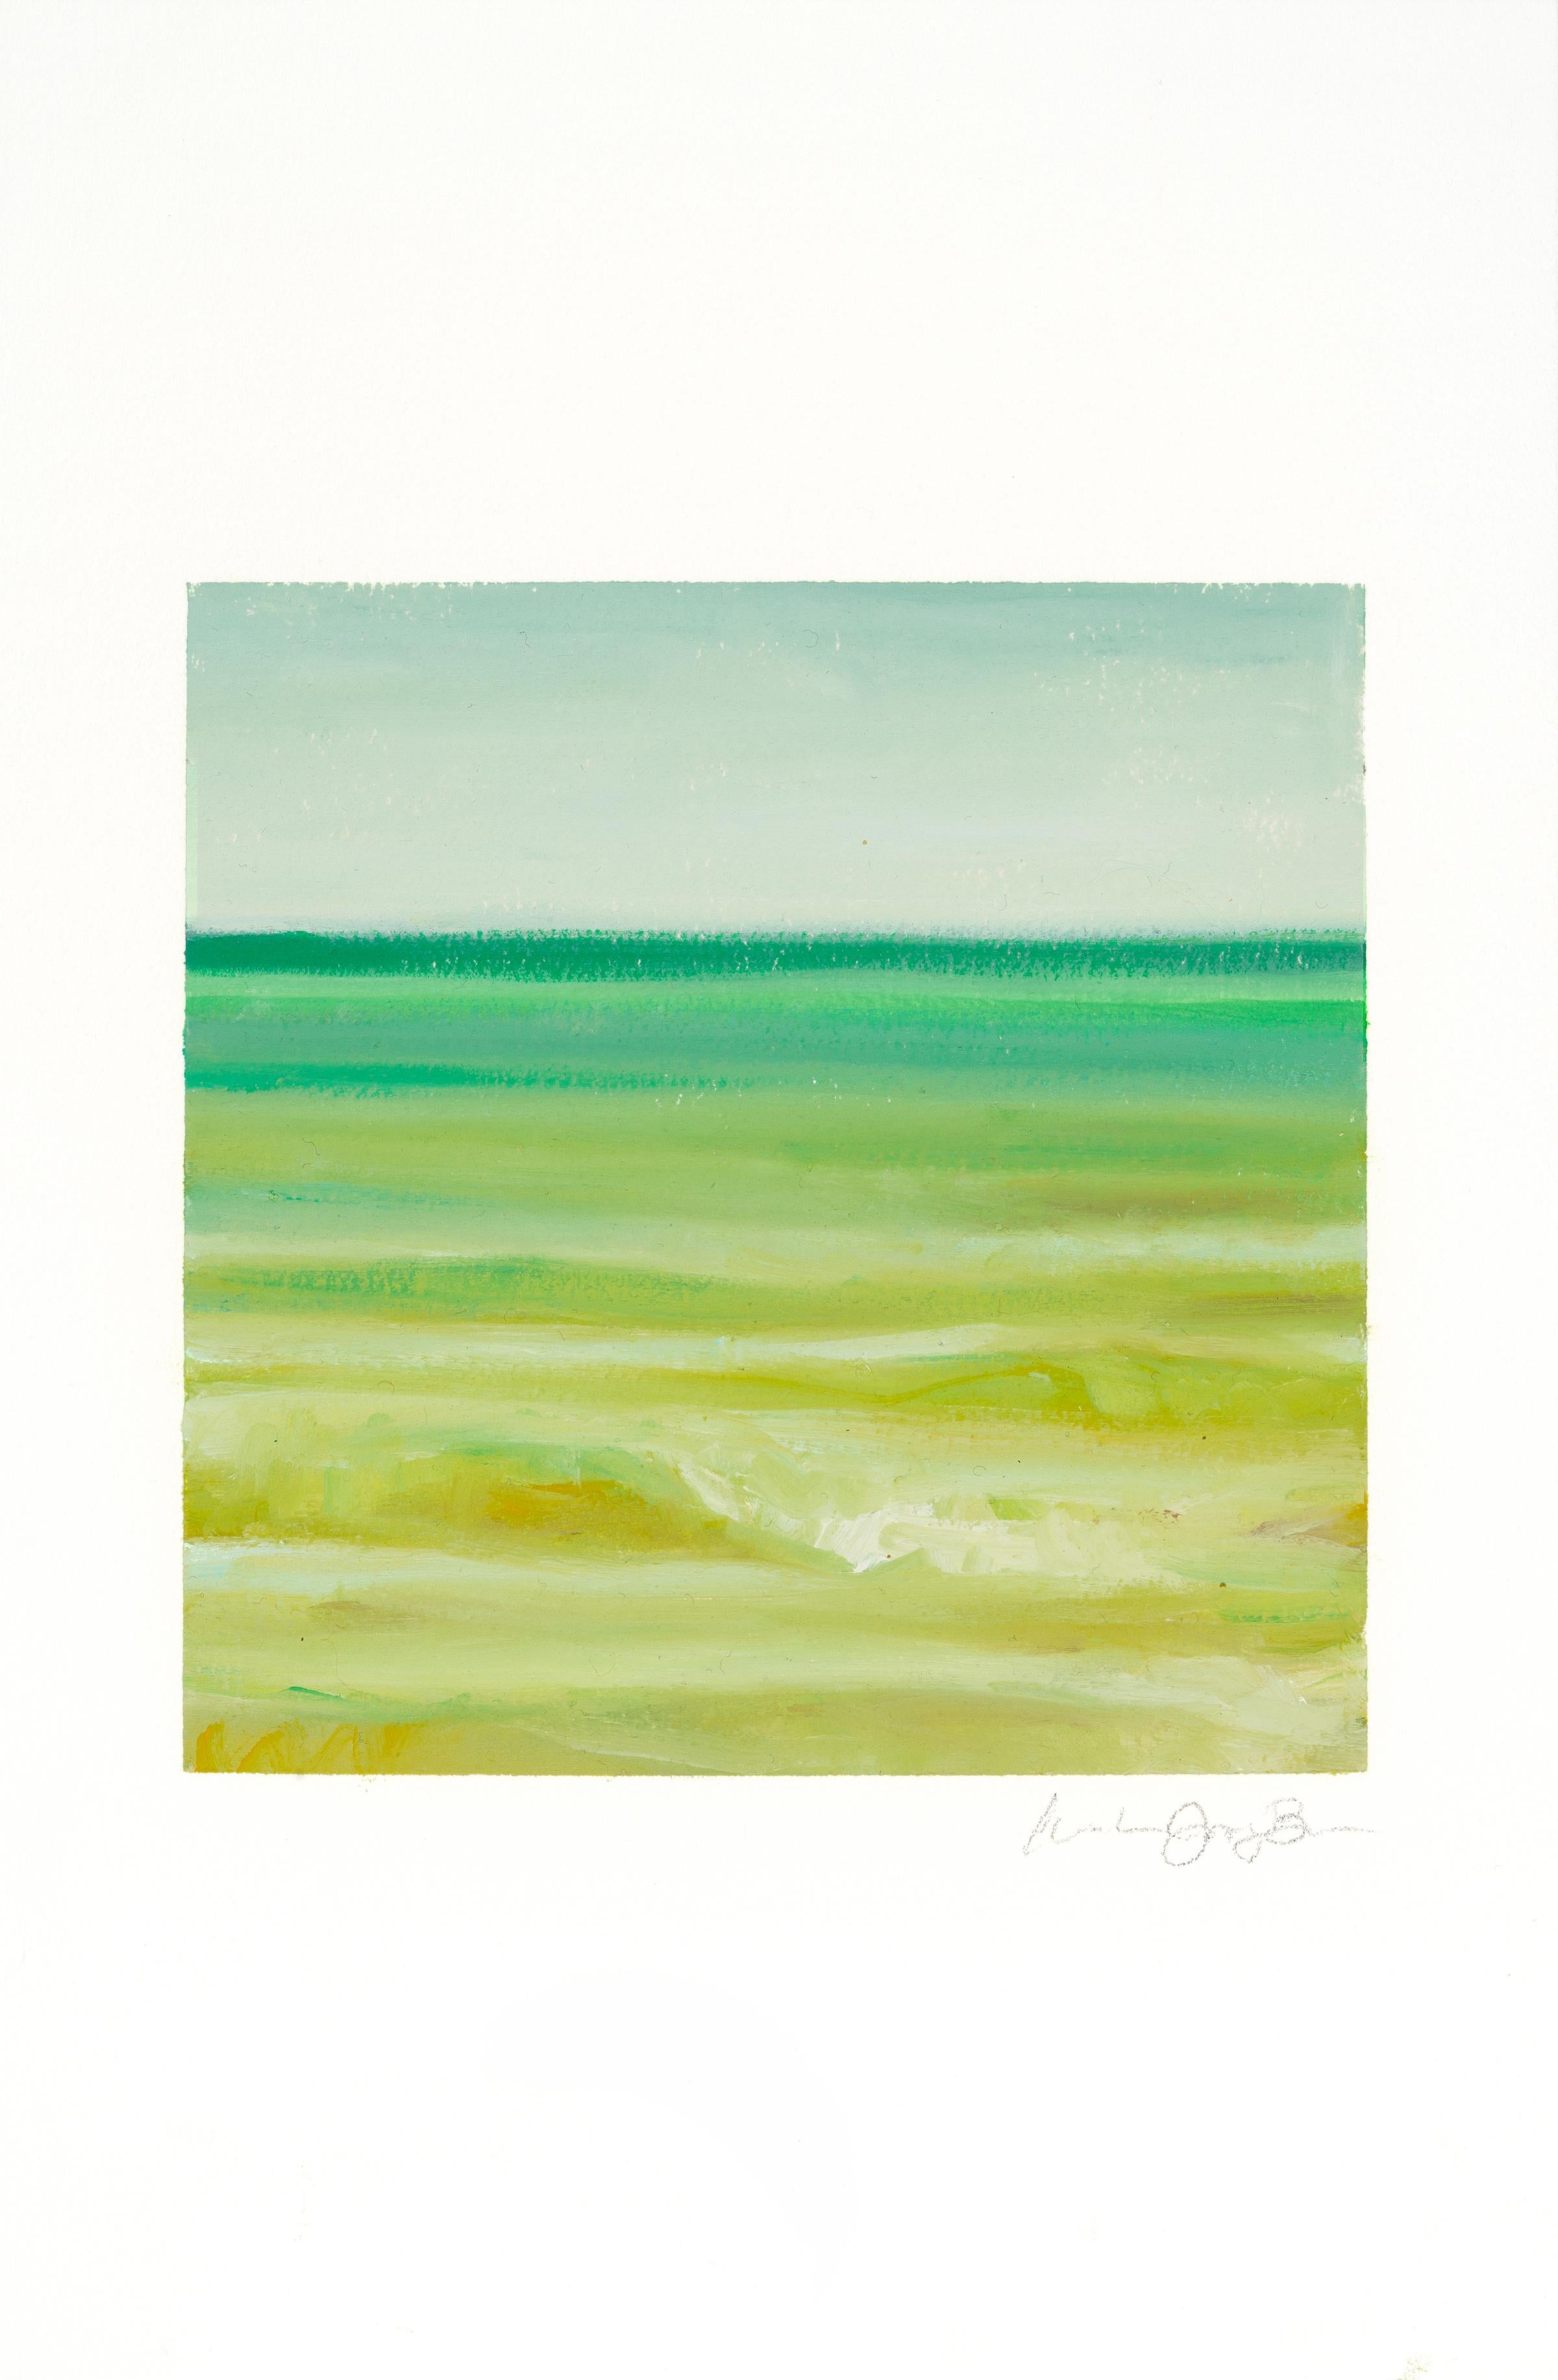 Landscape Painting Amanda Joy Brown - EMERALDO COAST - Peinture de Phthalo verte, jaune et bleue avec océan et ciel